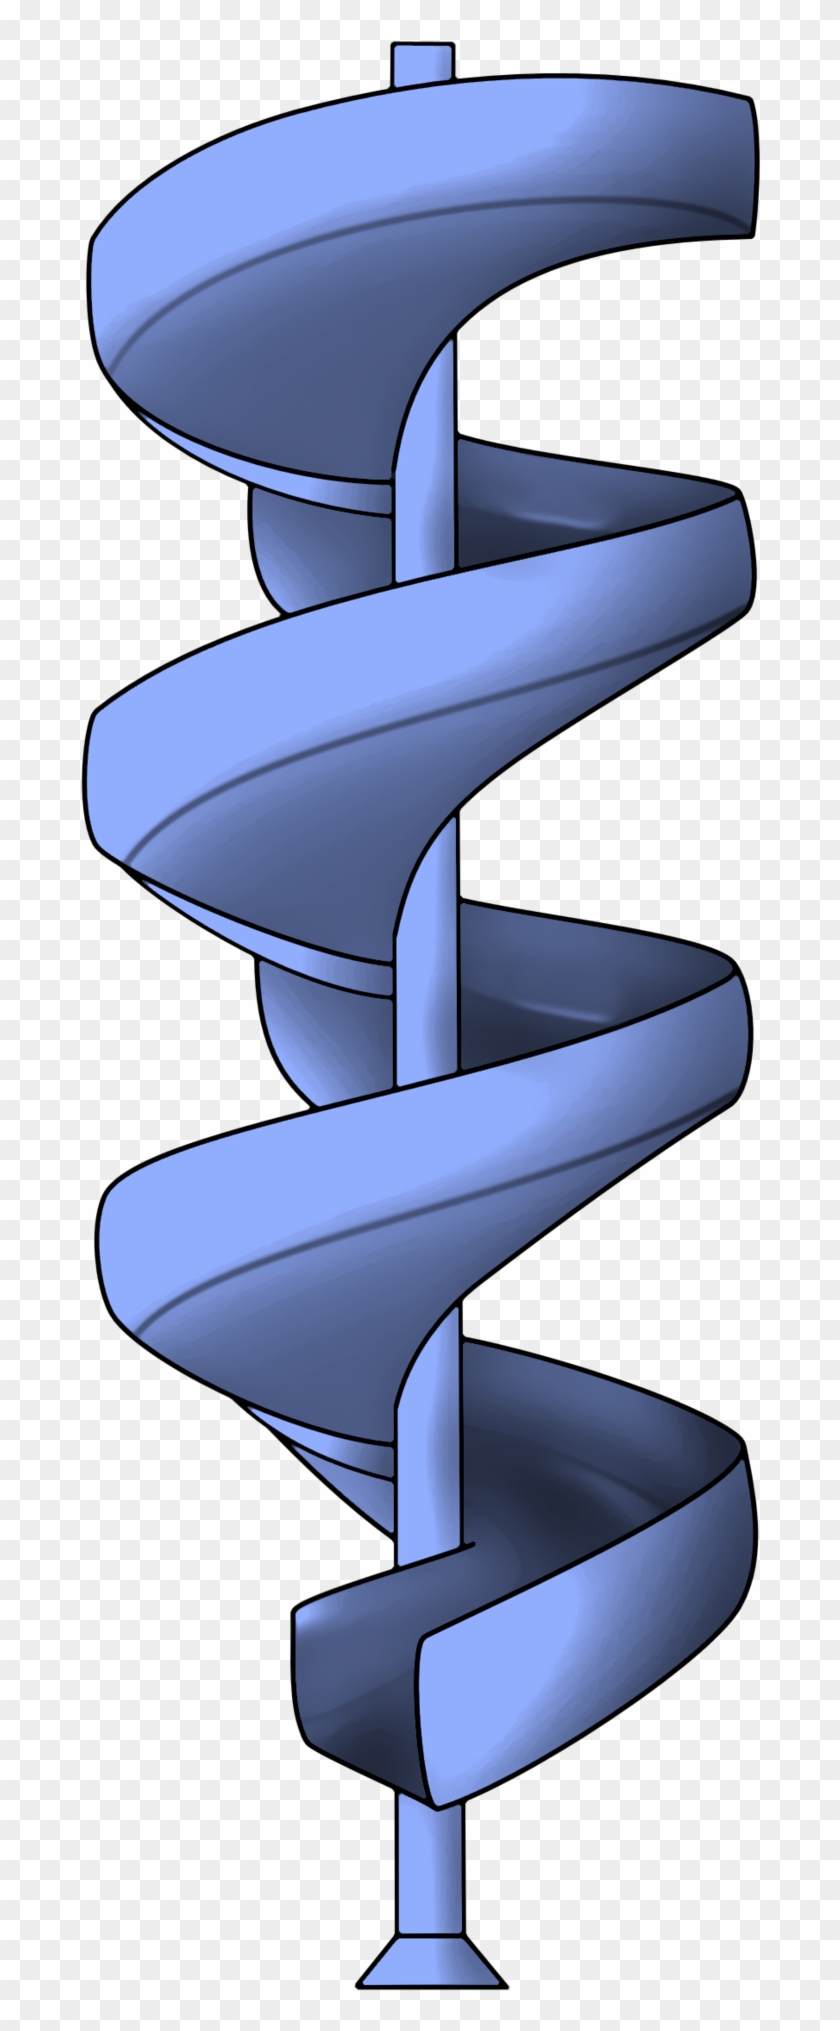 Spiral Slide By Reitanna Seishin Spiral Slide By Reitanna - Spiral Slide Transparent #139302